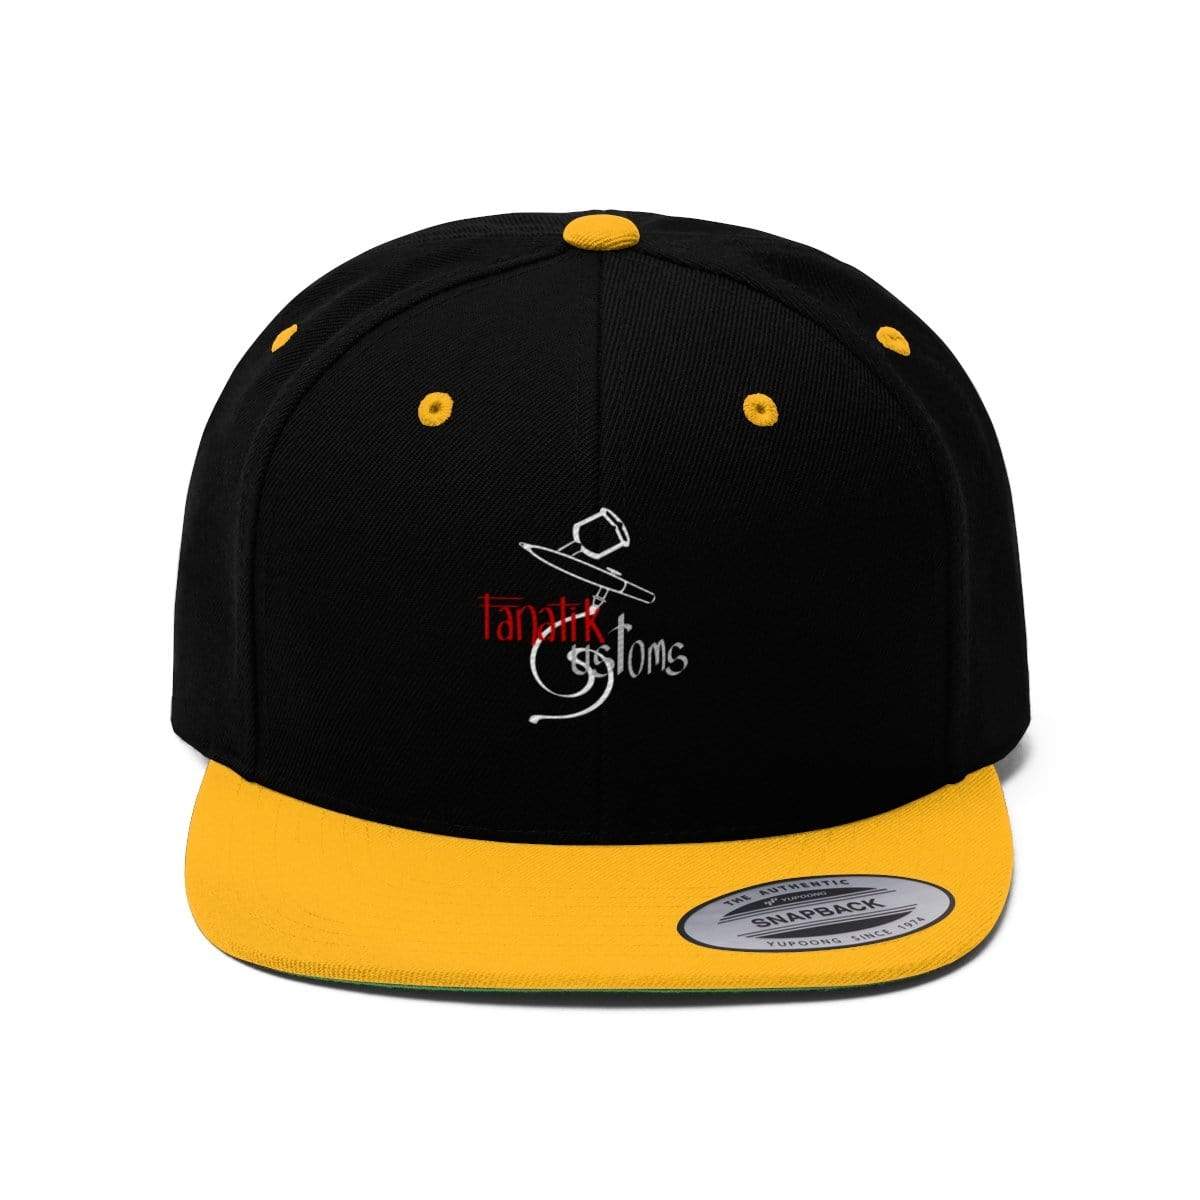 Plumskum Hats Black/Gold / One size Will’s Fanatik Customs Flat Bill Hat